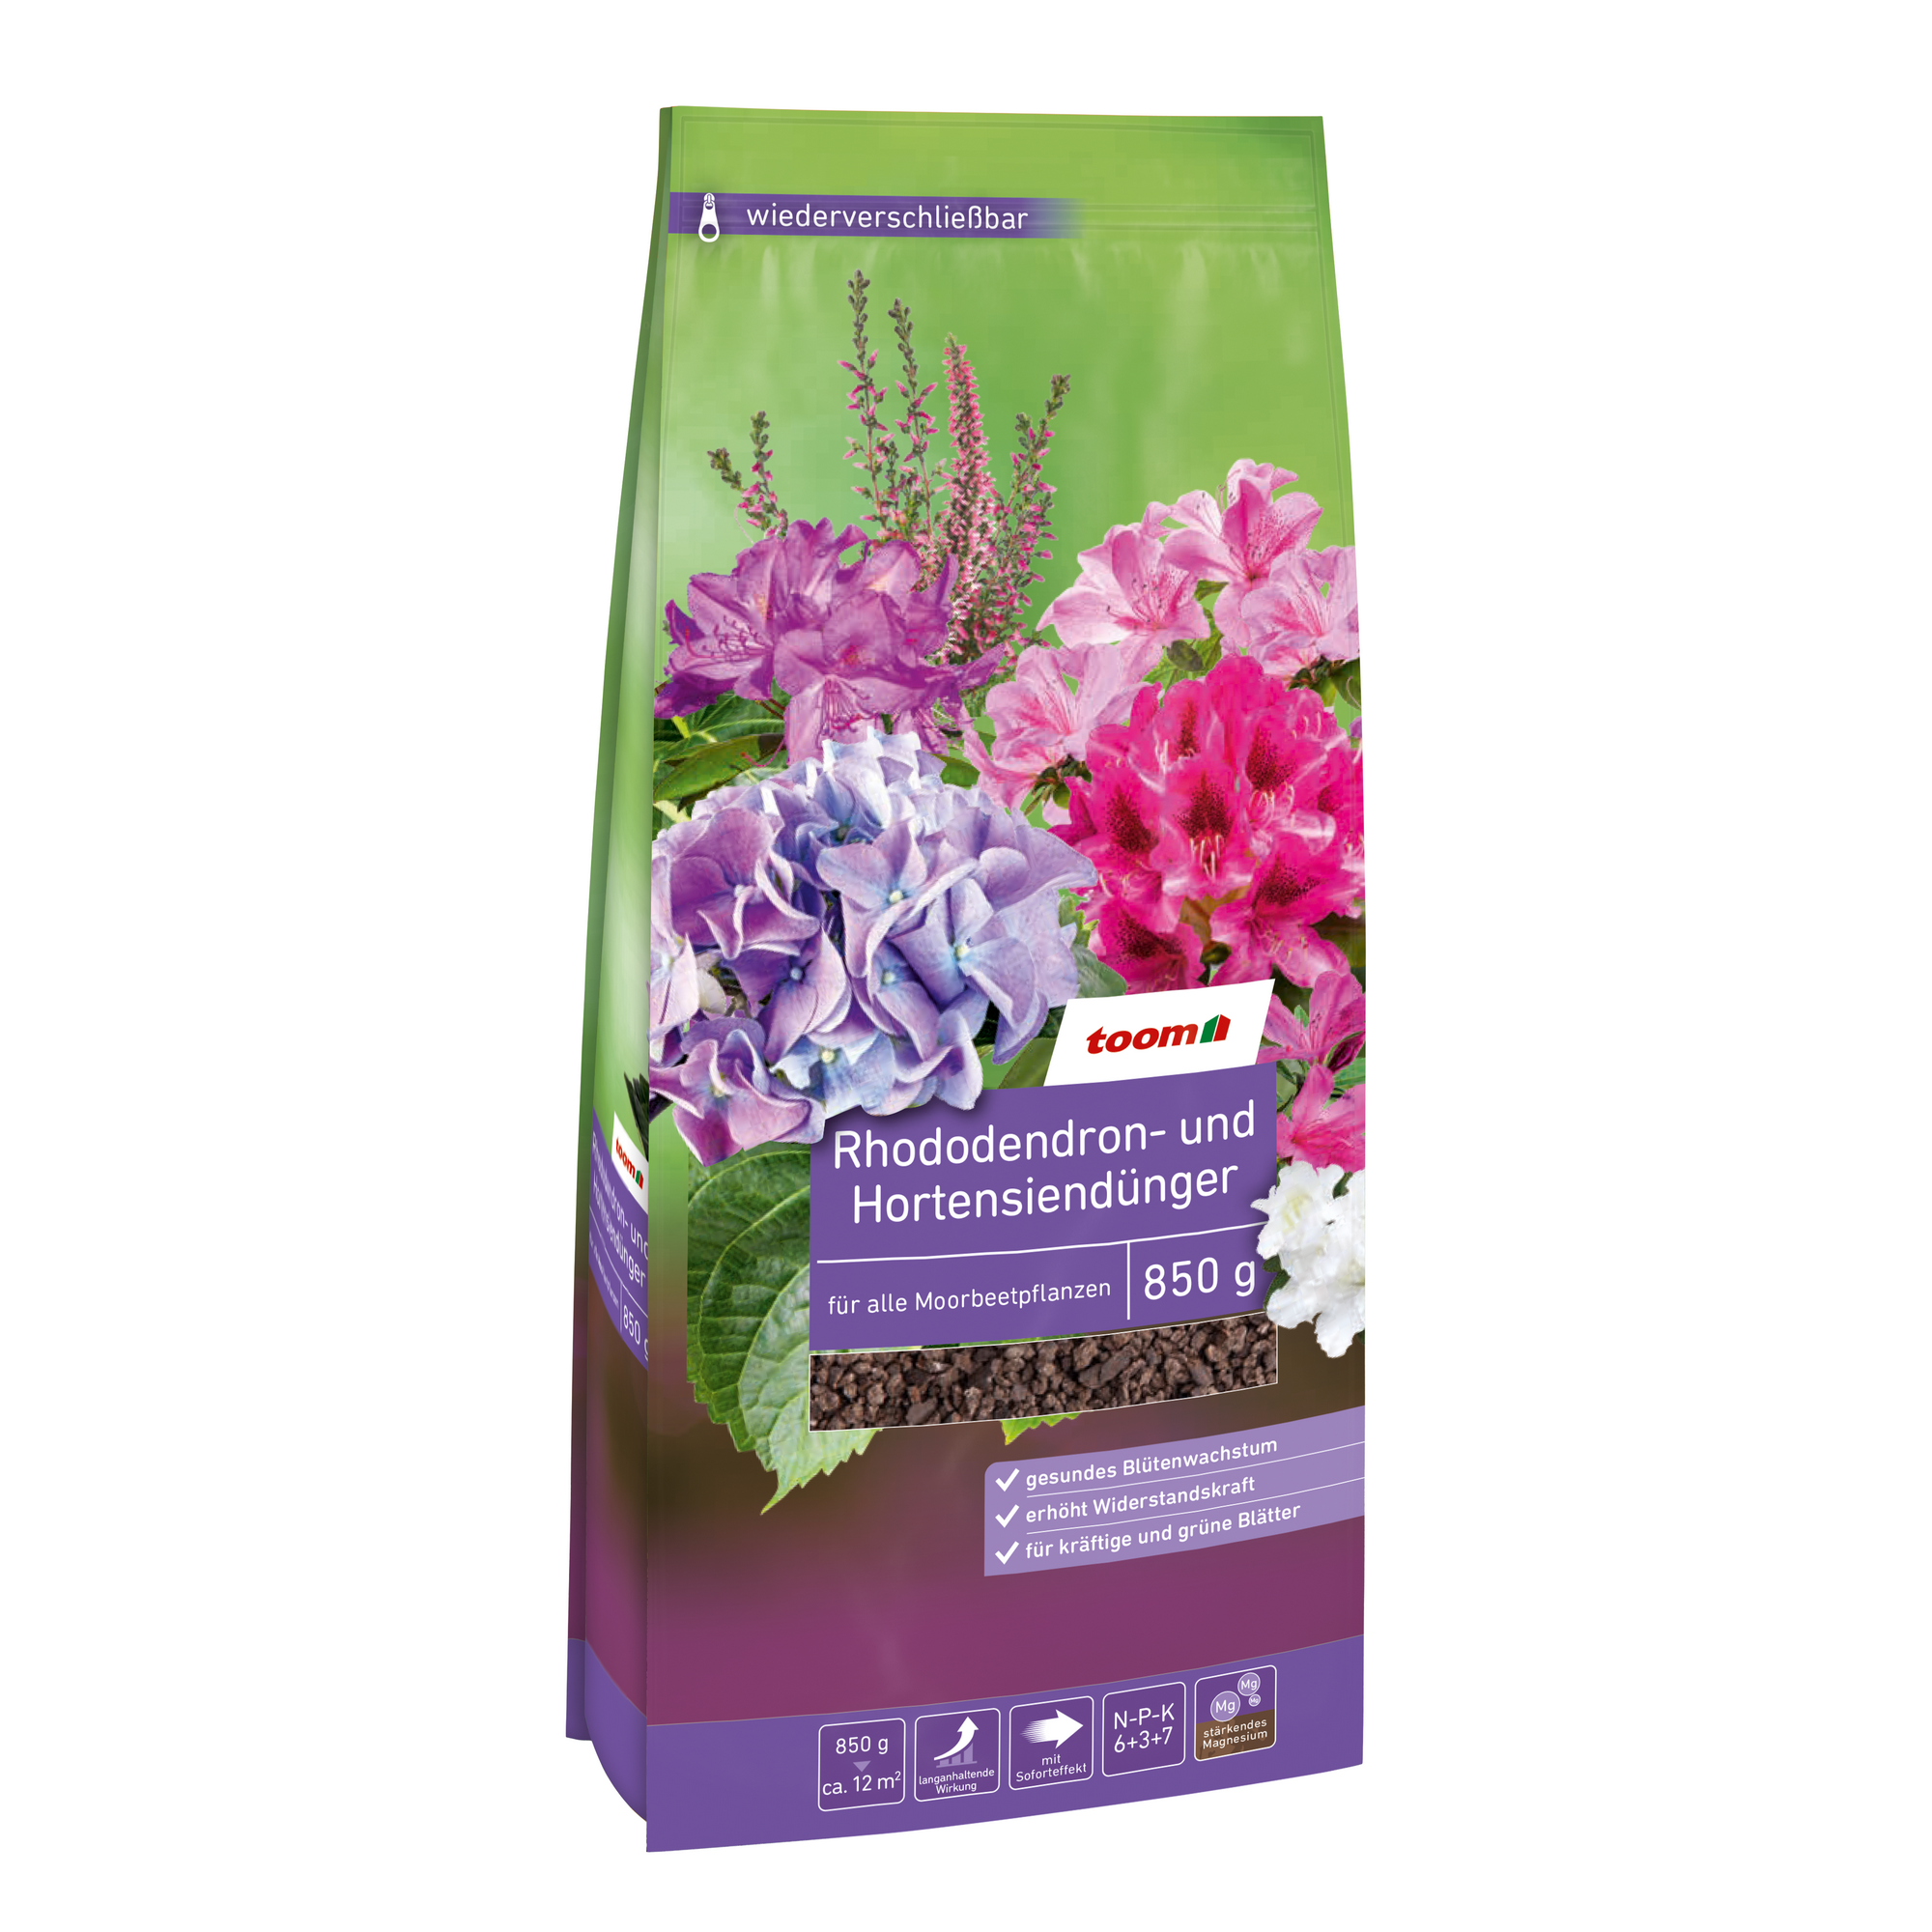 Rhododendron- und Hortensiendünger 850 g + product picture